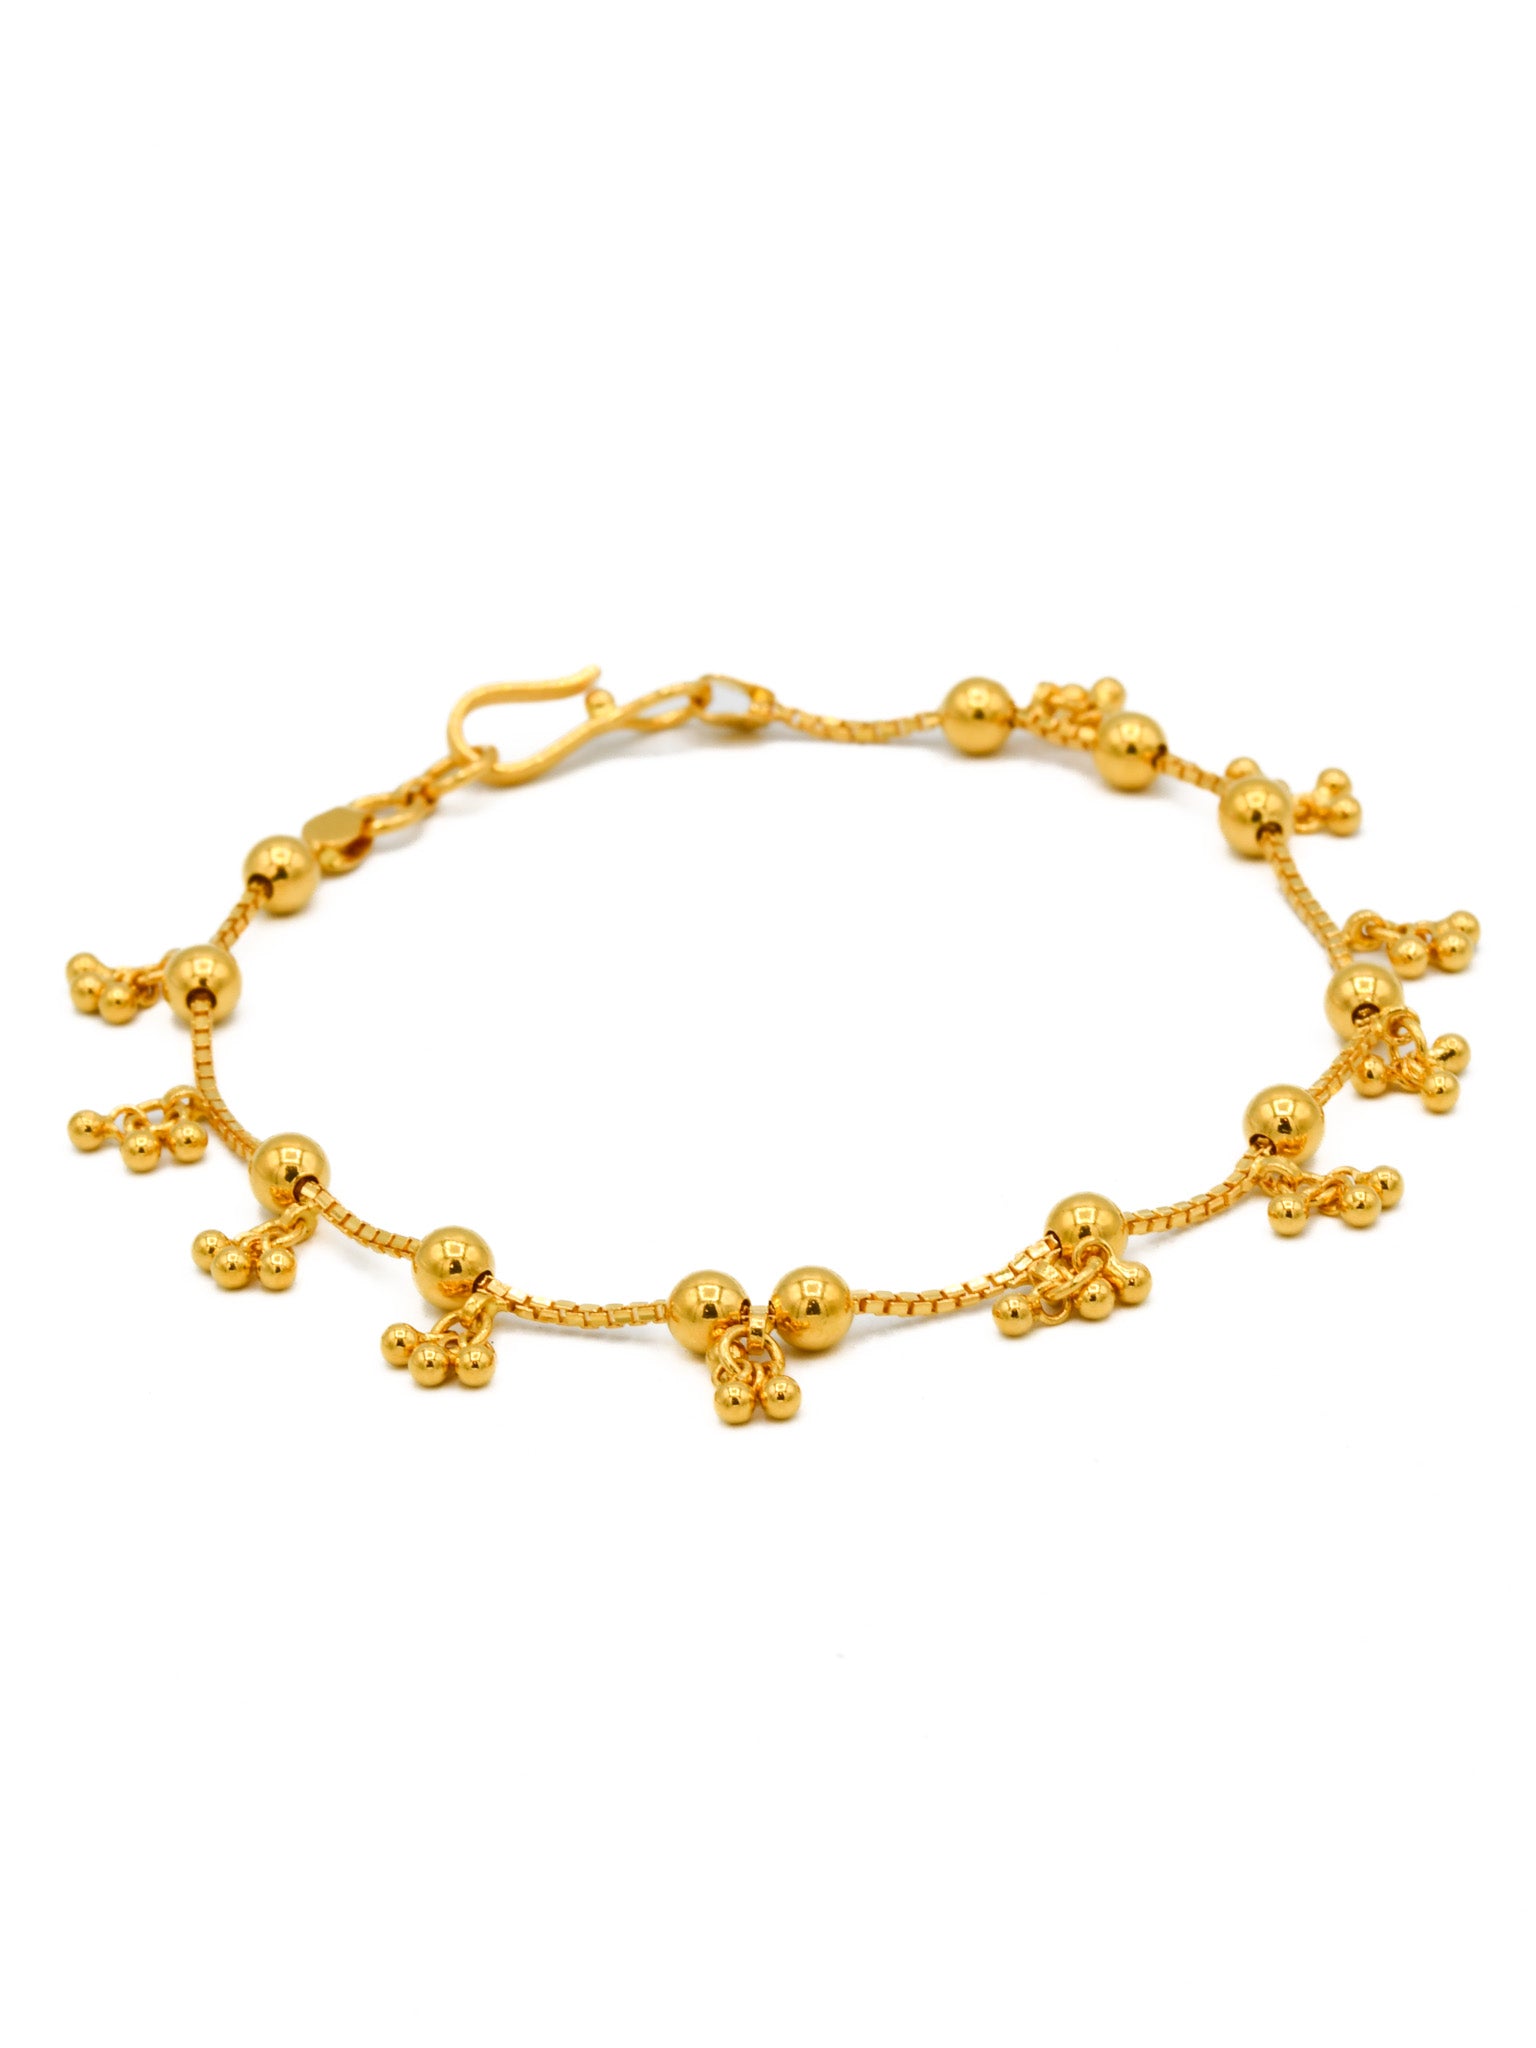 22ct Gold Charms Ladies Bracelet - Roop Darshan